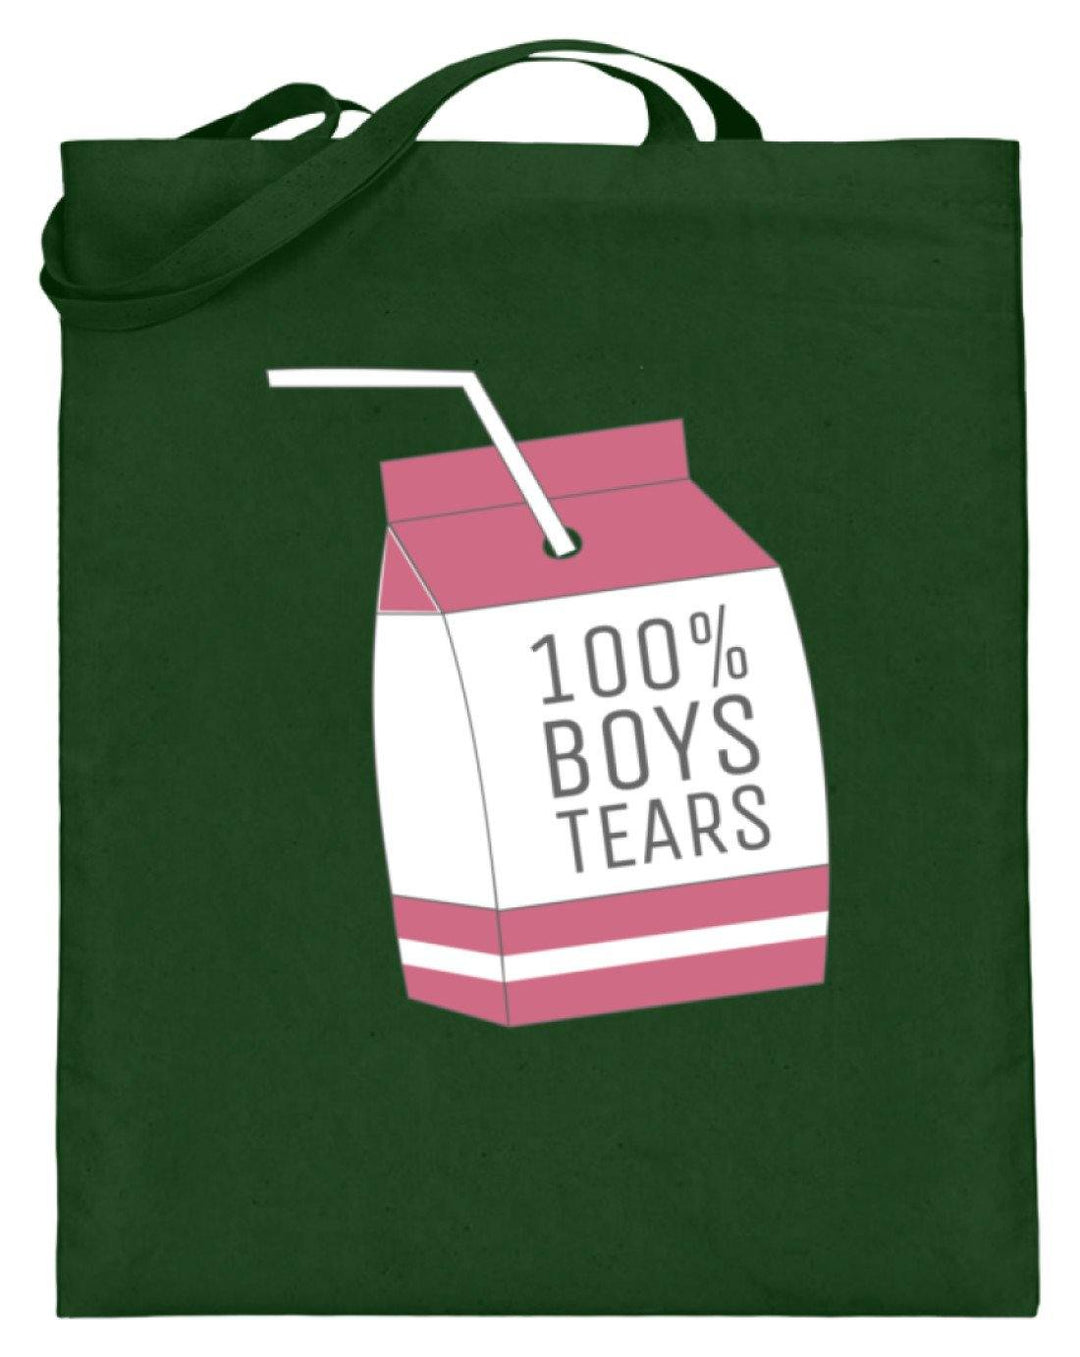 100% Boys Tears  - Jutebeutel (mit langen Henkeln) - Words on Shirts